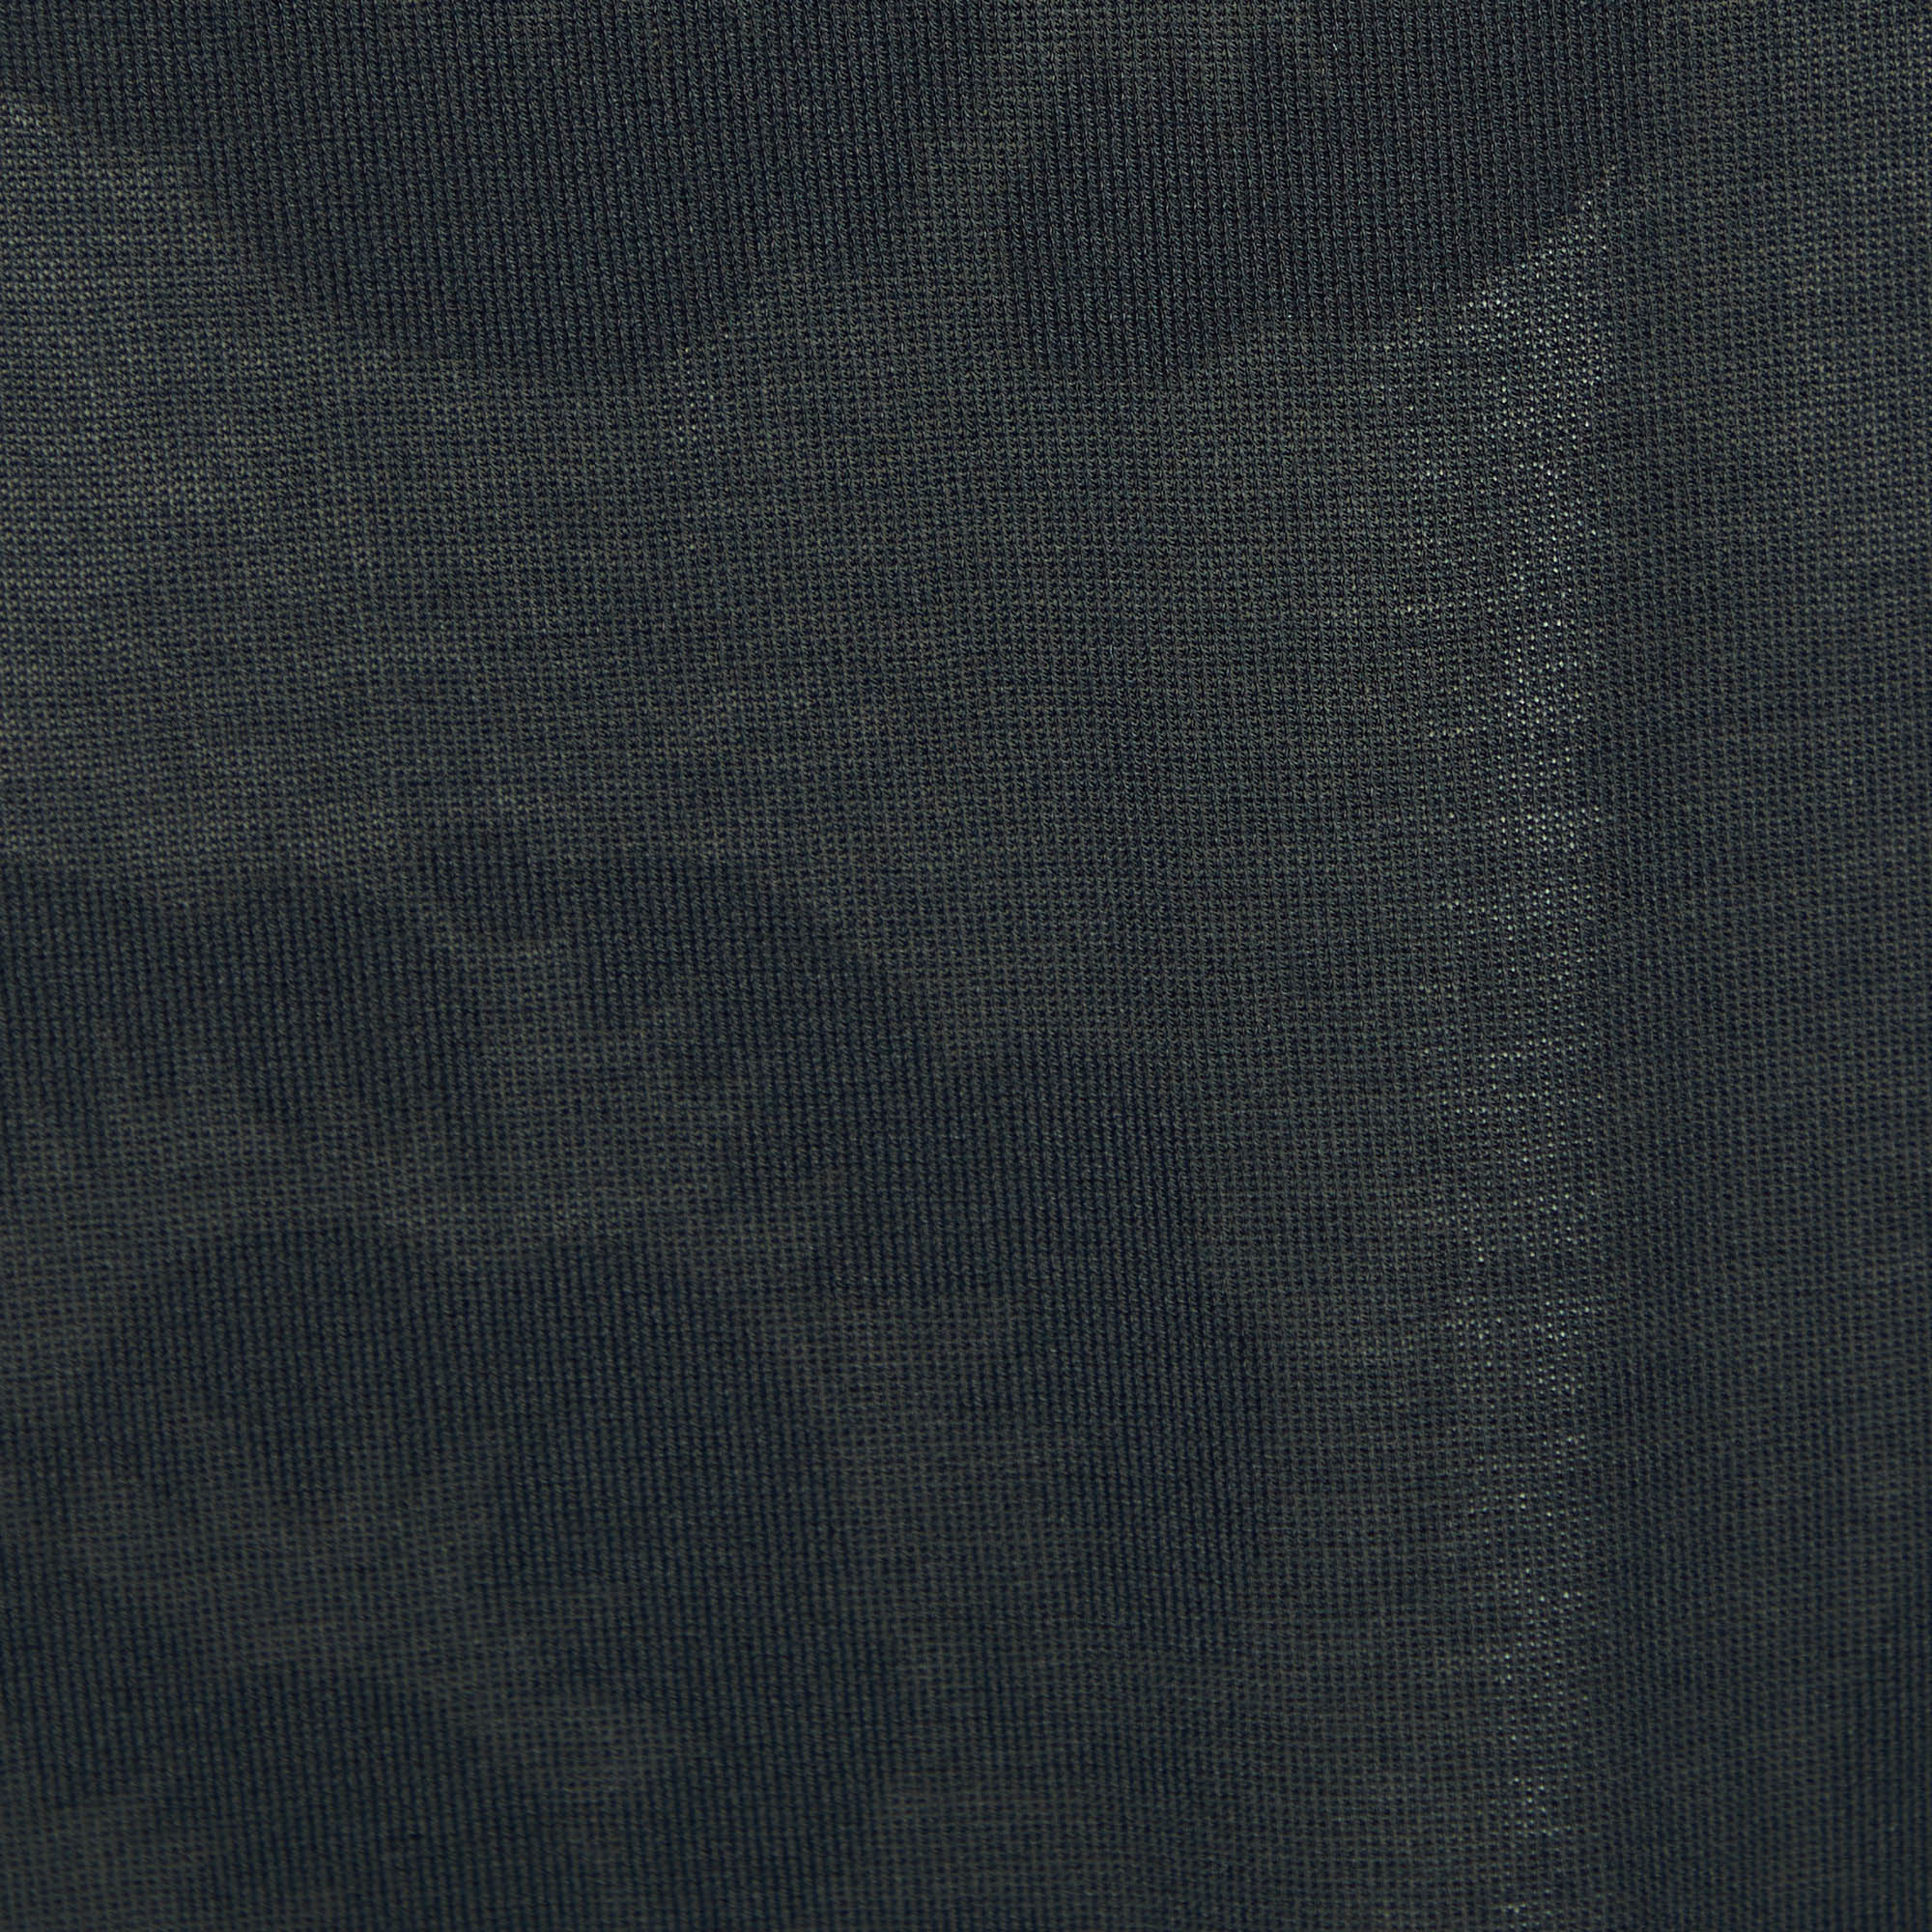 Roberto Cavalli Black Knit & Silk Lined Shrug L